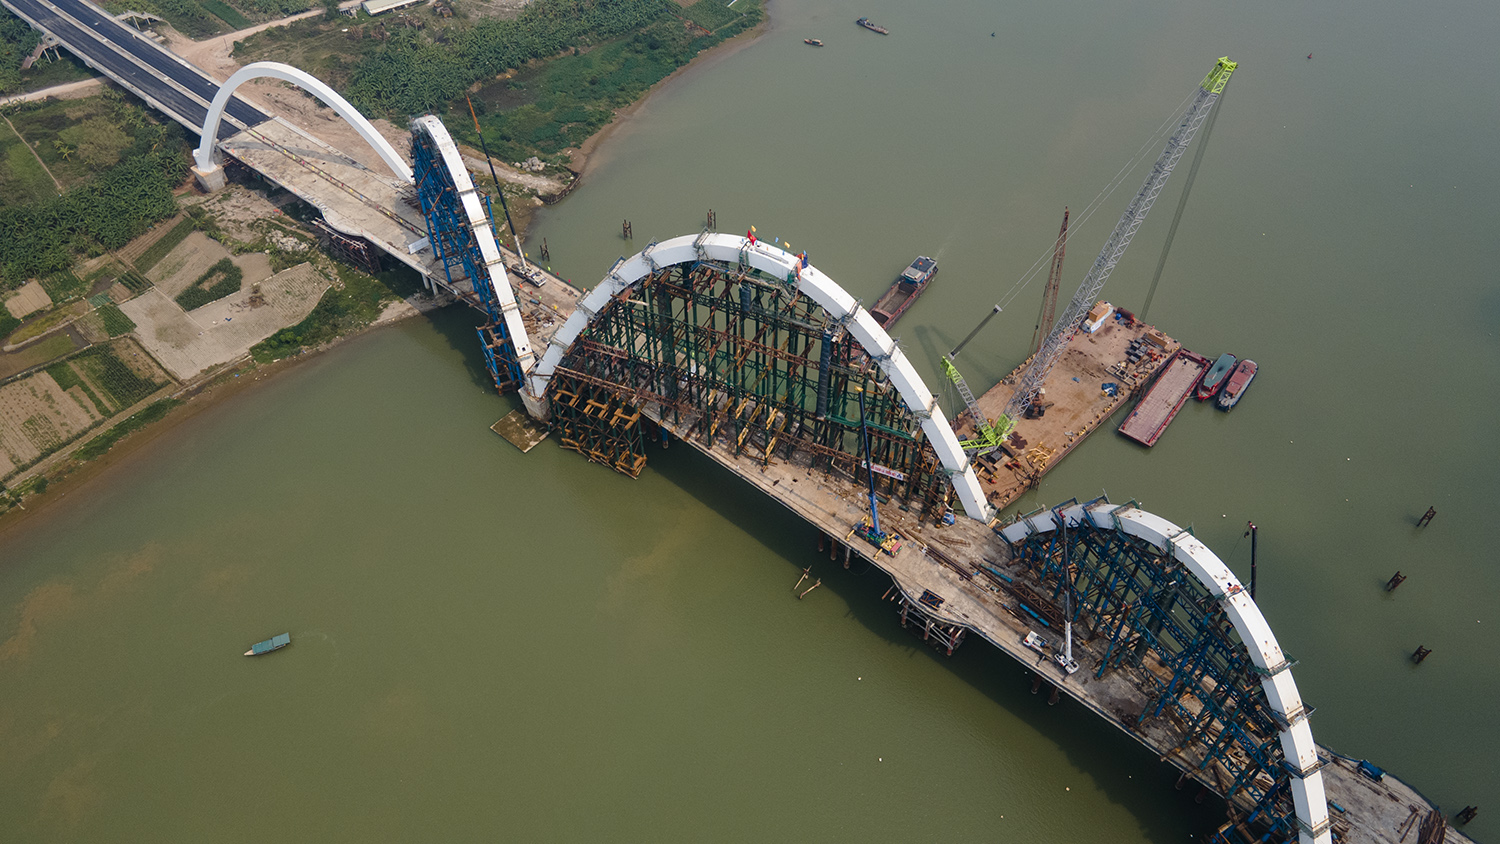 Cầu vòm thép cao nhất Việt Nam hình 2 con rồng uốn lượn đã thành hình - 12